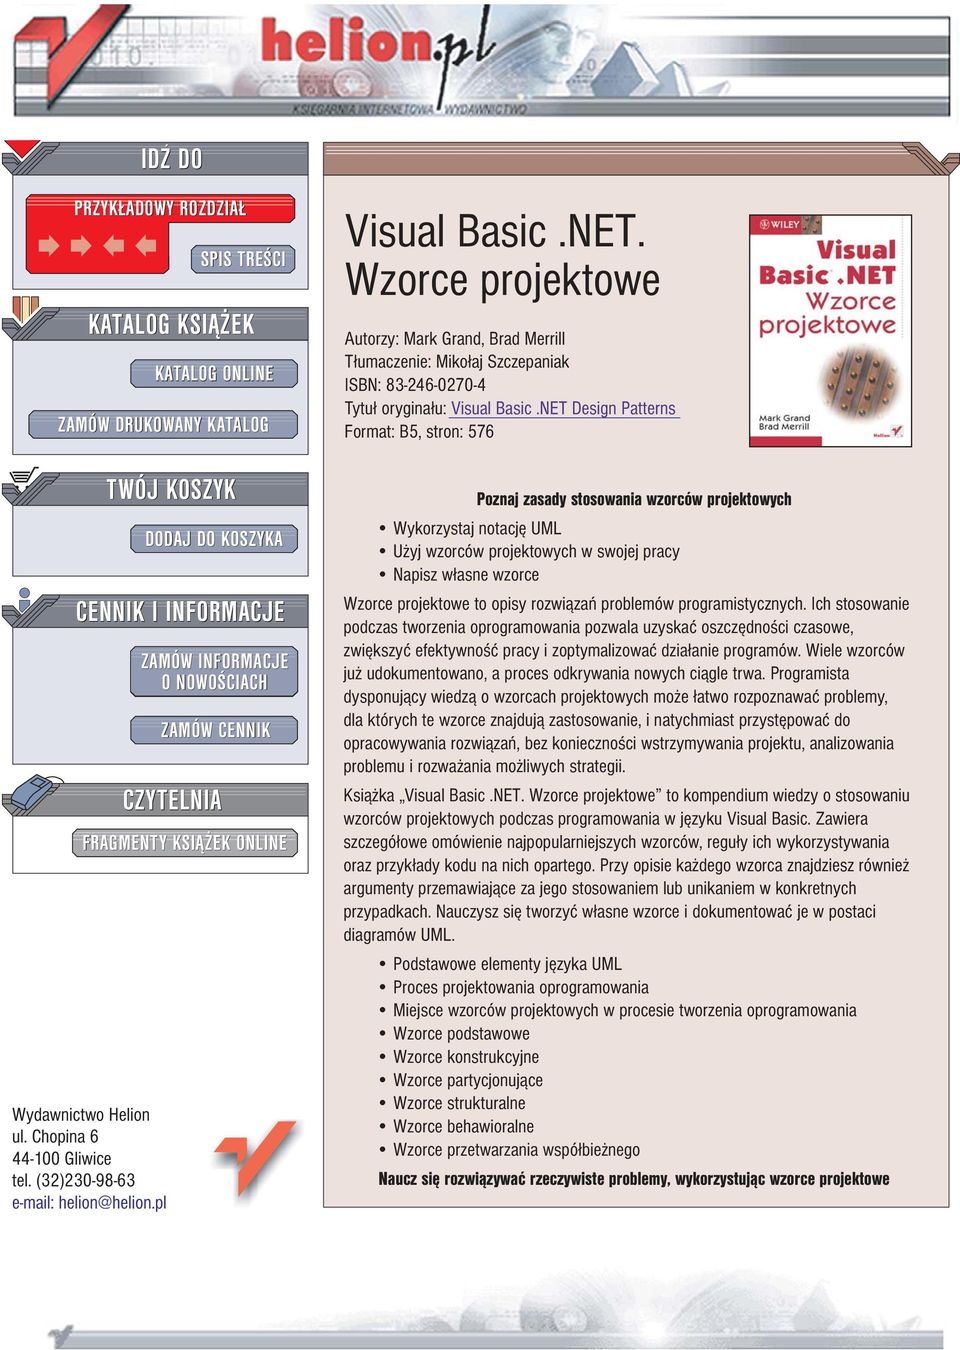 ONLINE Visual Basic.NET. Wzorce projektowe Autorzy: Mark Grand, Brad Merrill T³umaczenie: Miko³aj Szczepaniak ISBN: 83-246-0270-4 Tytu³ orygina³u: Visual Basic.